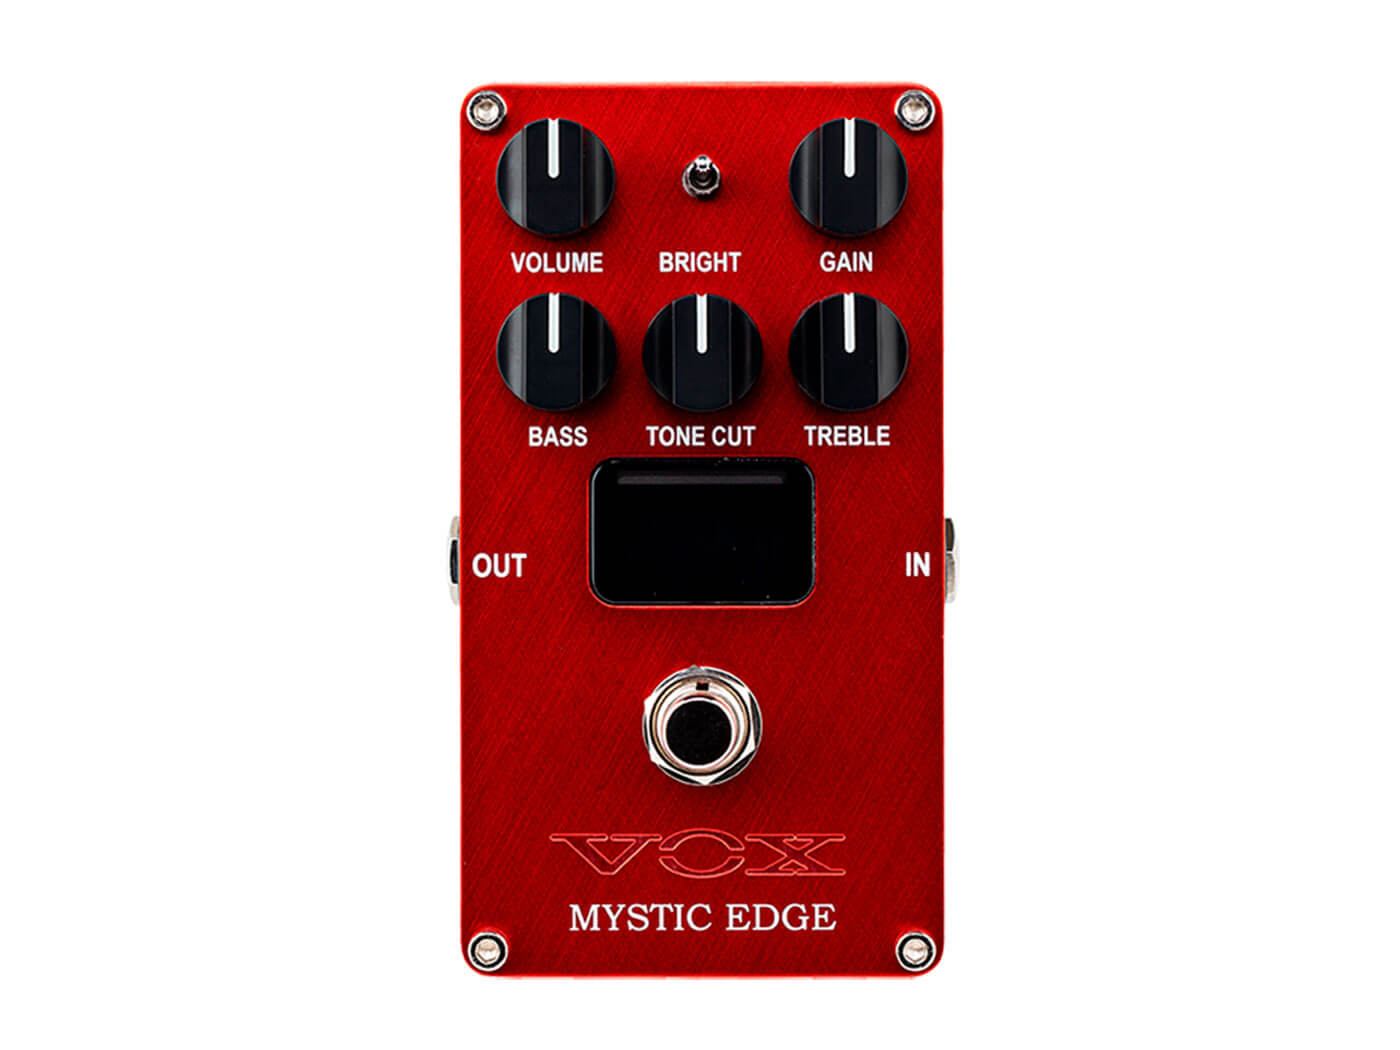 The Vox Mystic Edge